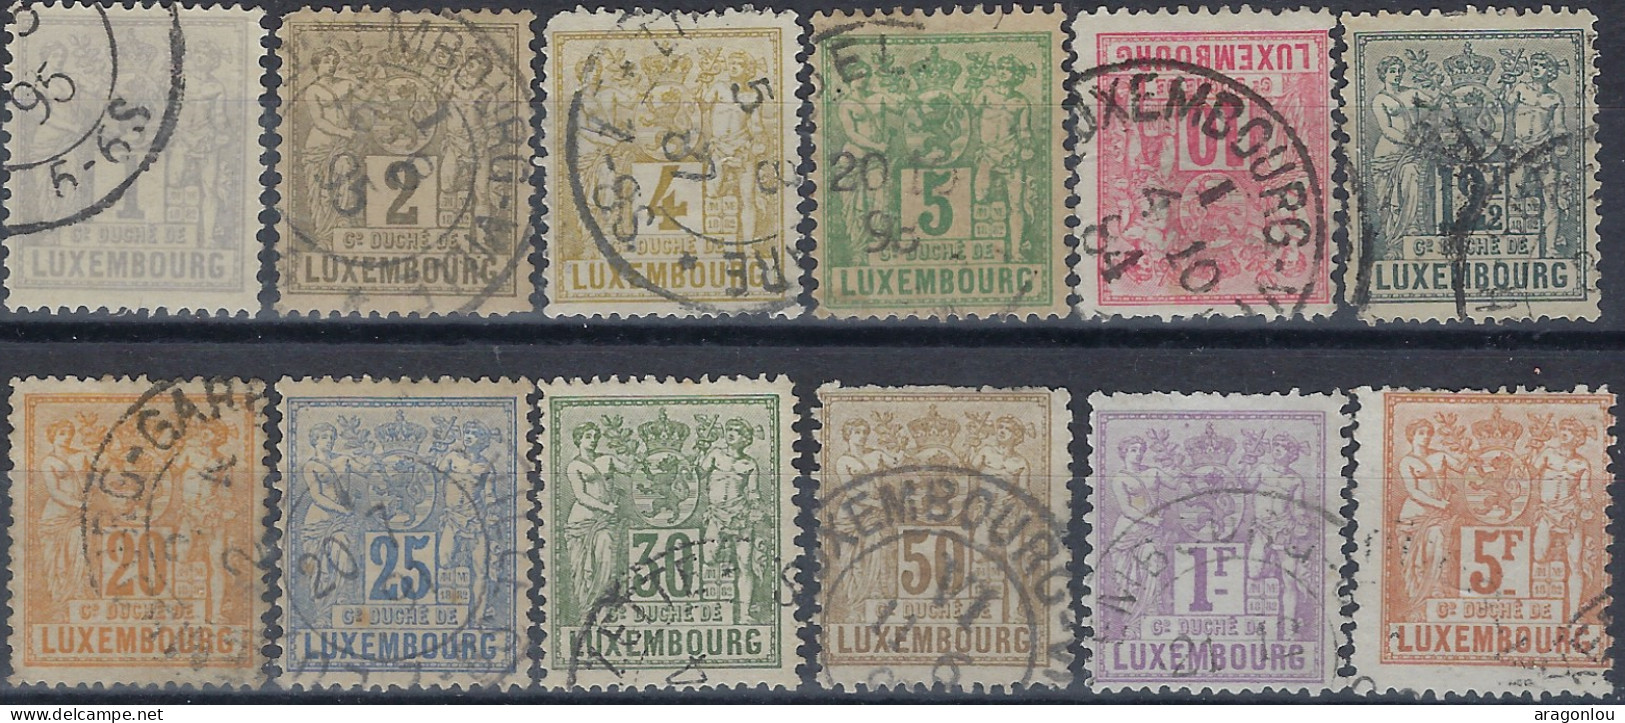 Luxembourg - Luxemburg - Timbres  1882   Allégorie   °   Satz   VC.  300,- - 1882 Allégorie